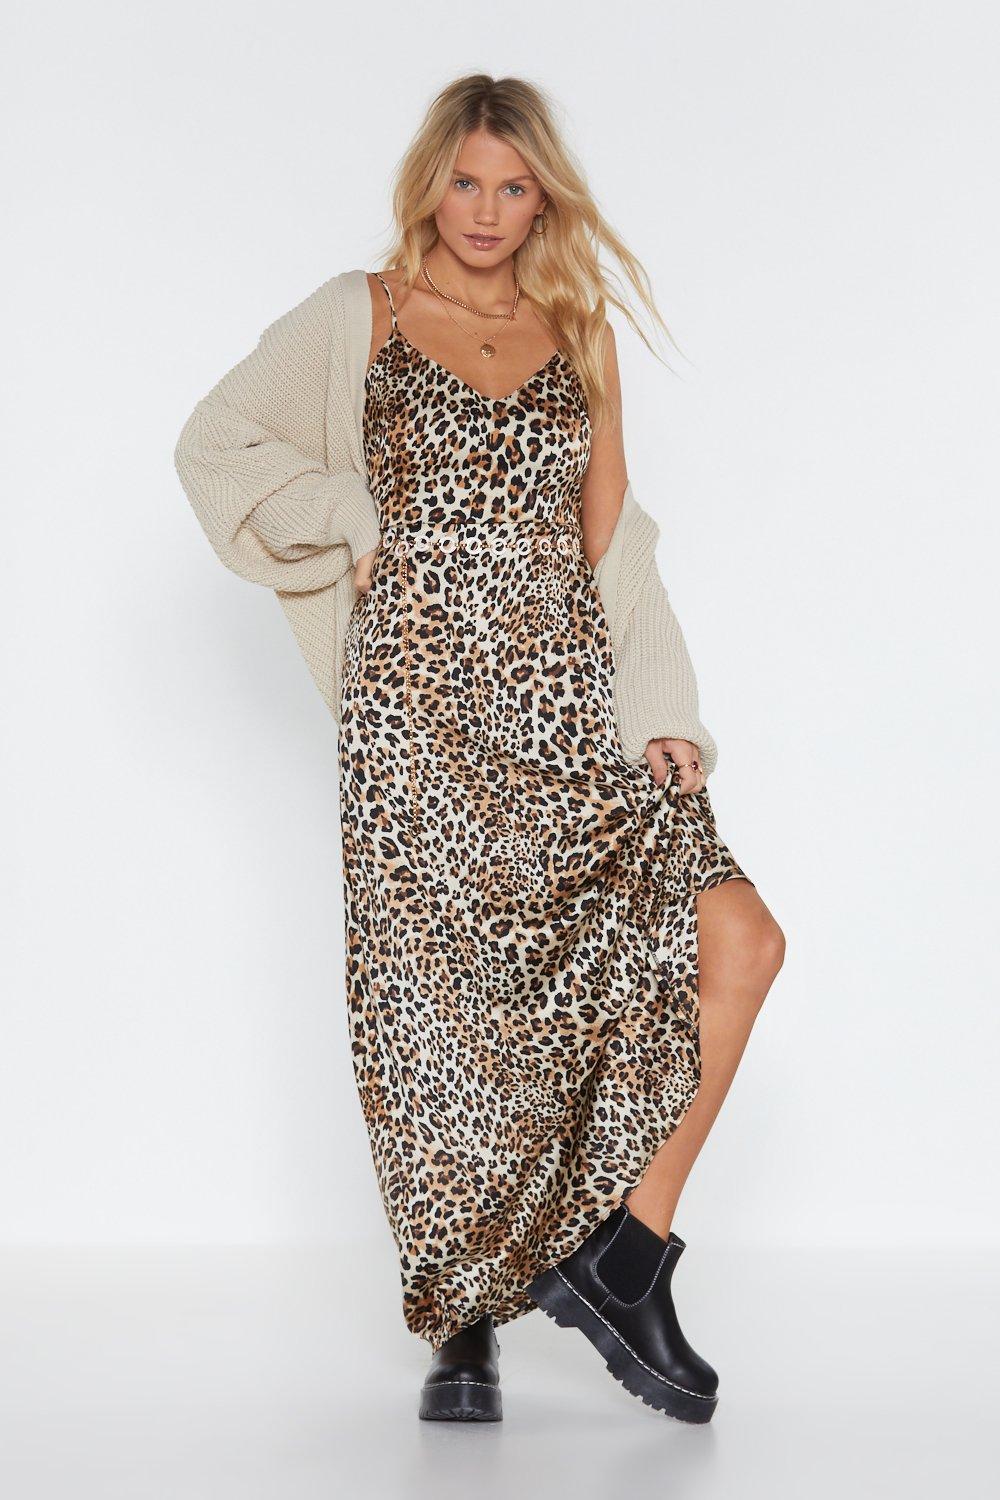 cheetah slip dress